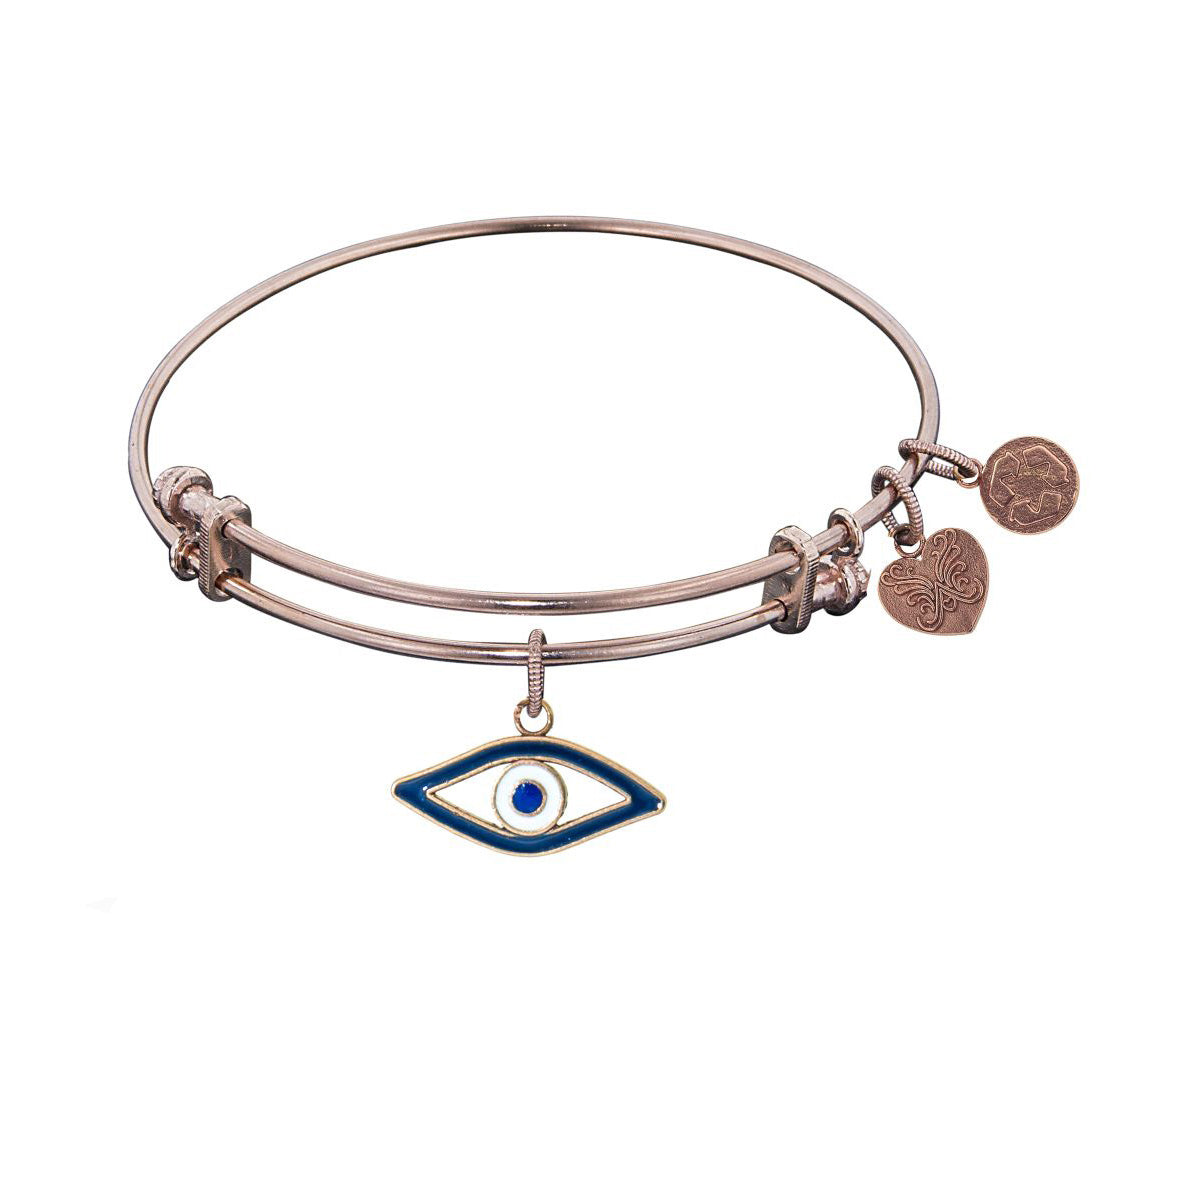 Stipple Finish Brass Evil Eye Angelica Bangle Bracelet, 7.25" fine designer jewelry for men and women